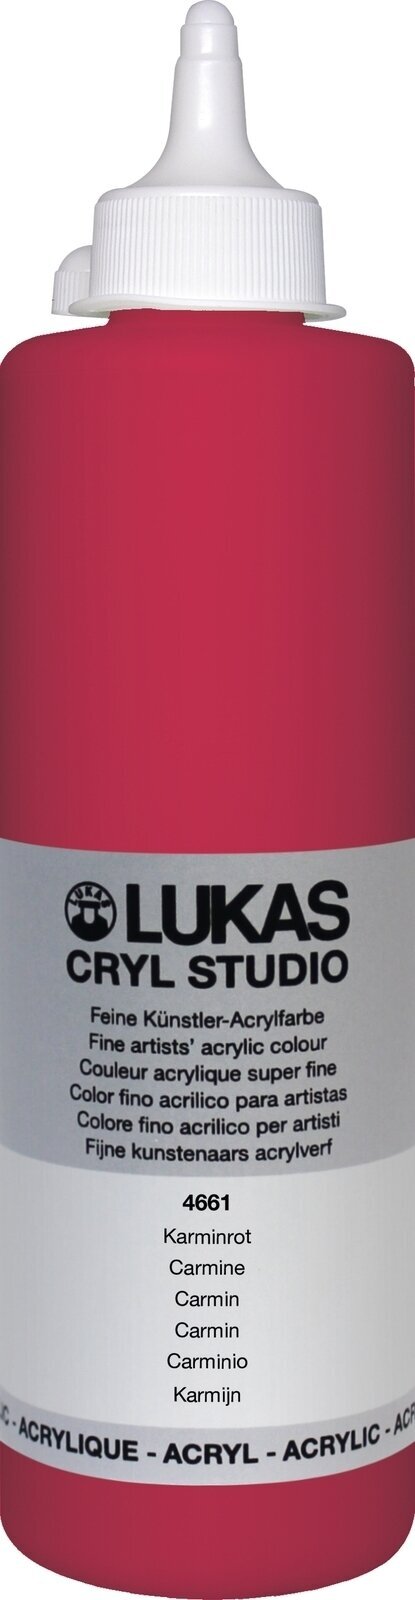 Tinta acrílica Lukas Cryl Studio Tinta acrílica 500 ml Carmine